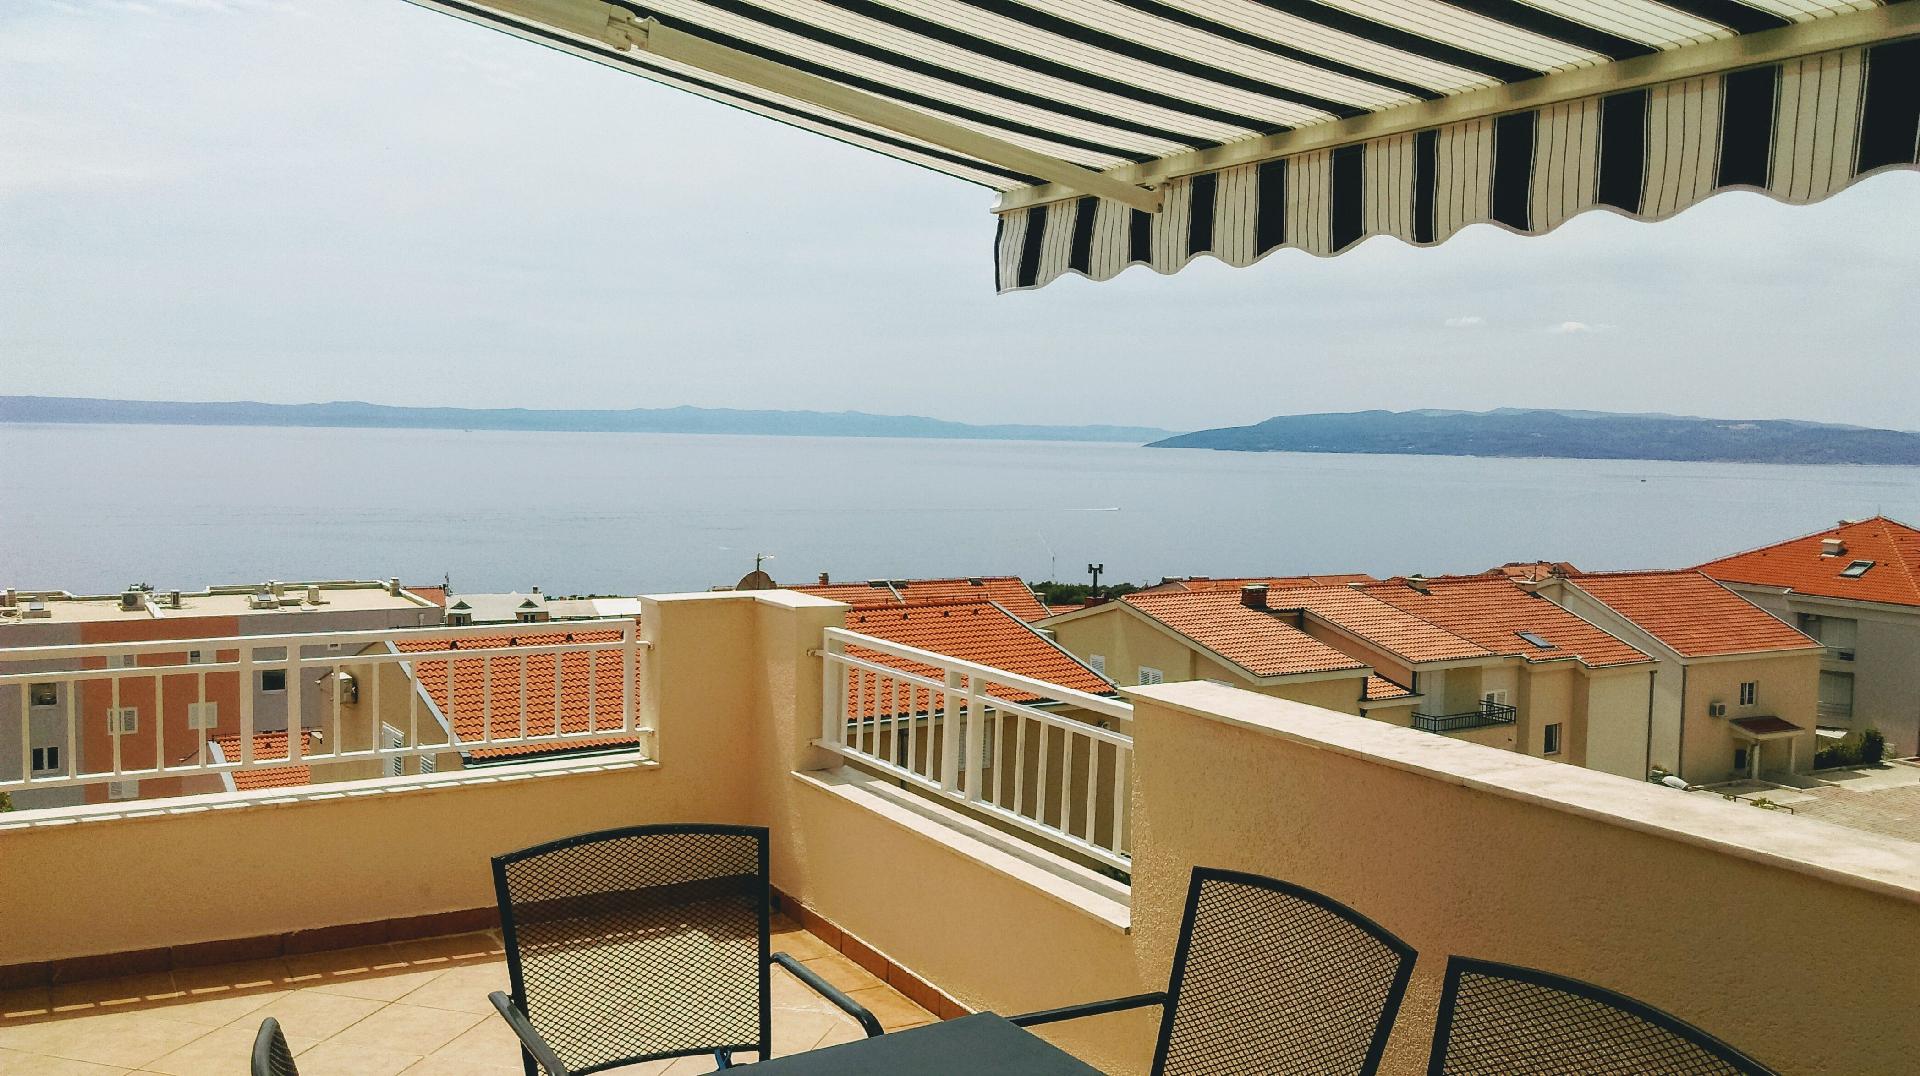 Geräumige Ferienwohnung mit zwei Balkonen, in Ferienwohnung in Kroatien